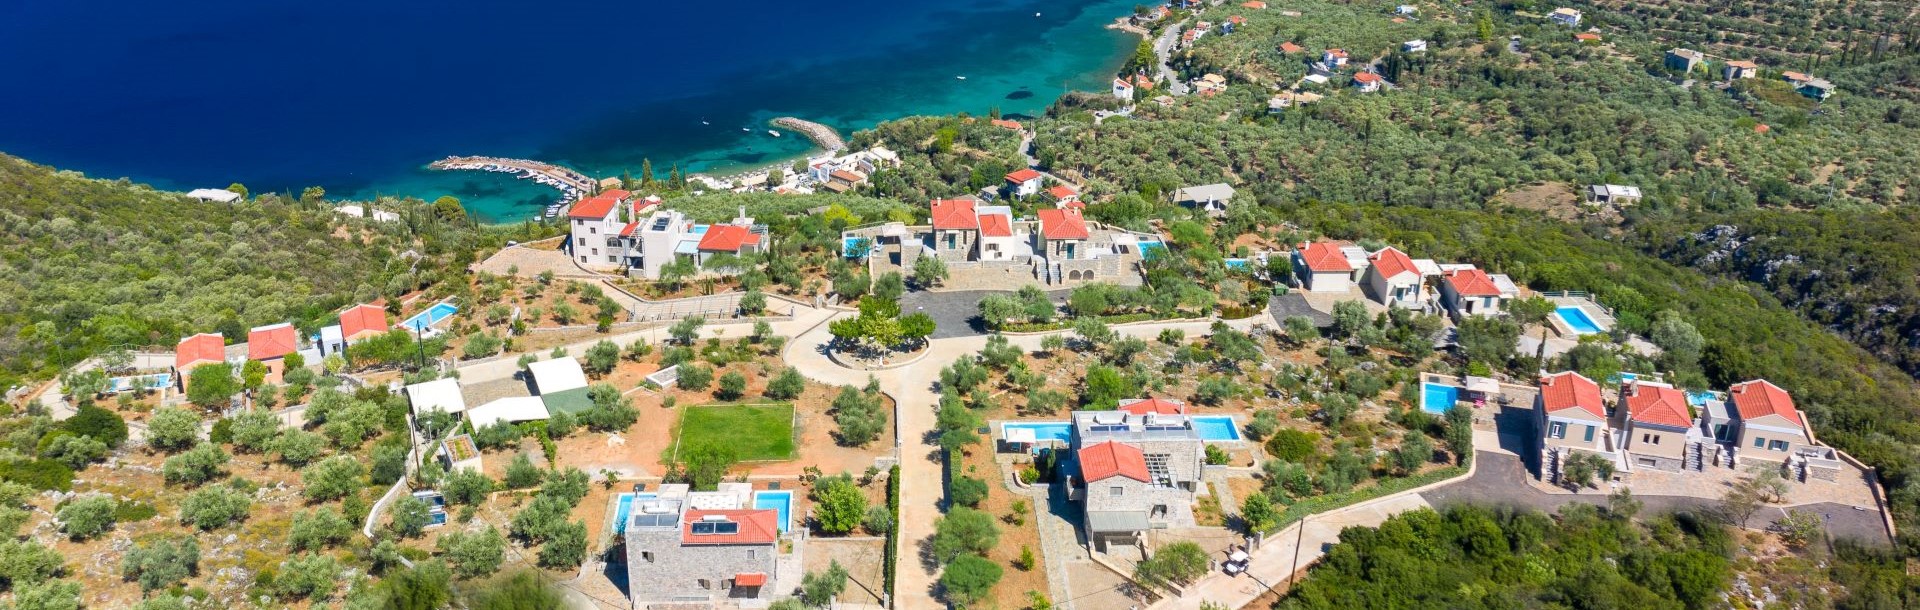 Villa Retreat with Breathtaking Sea Views